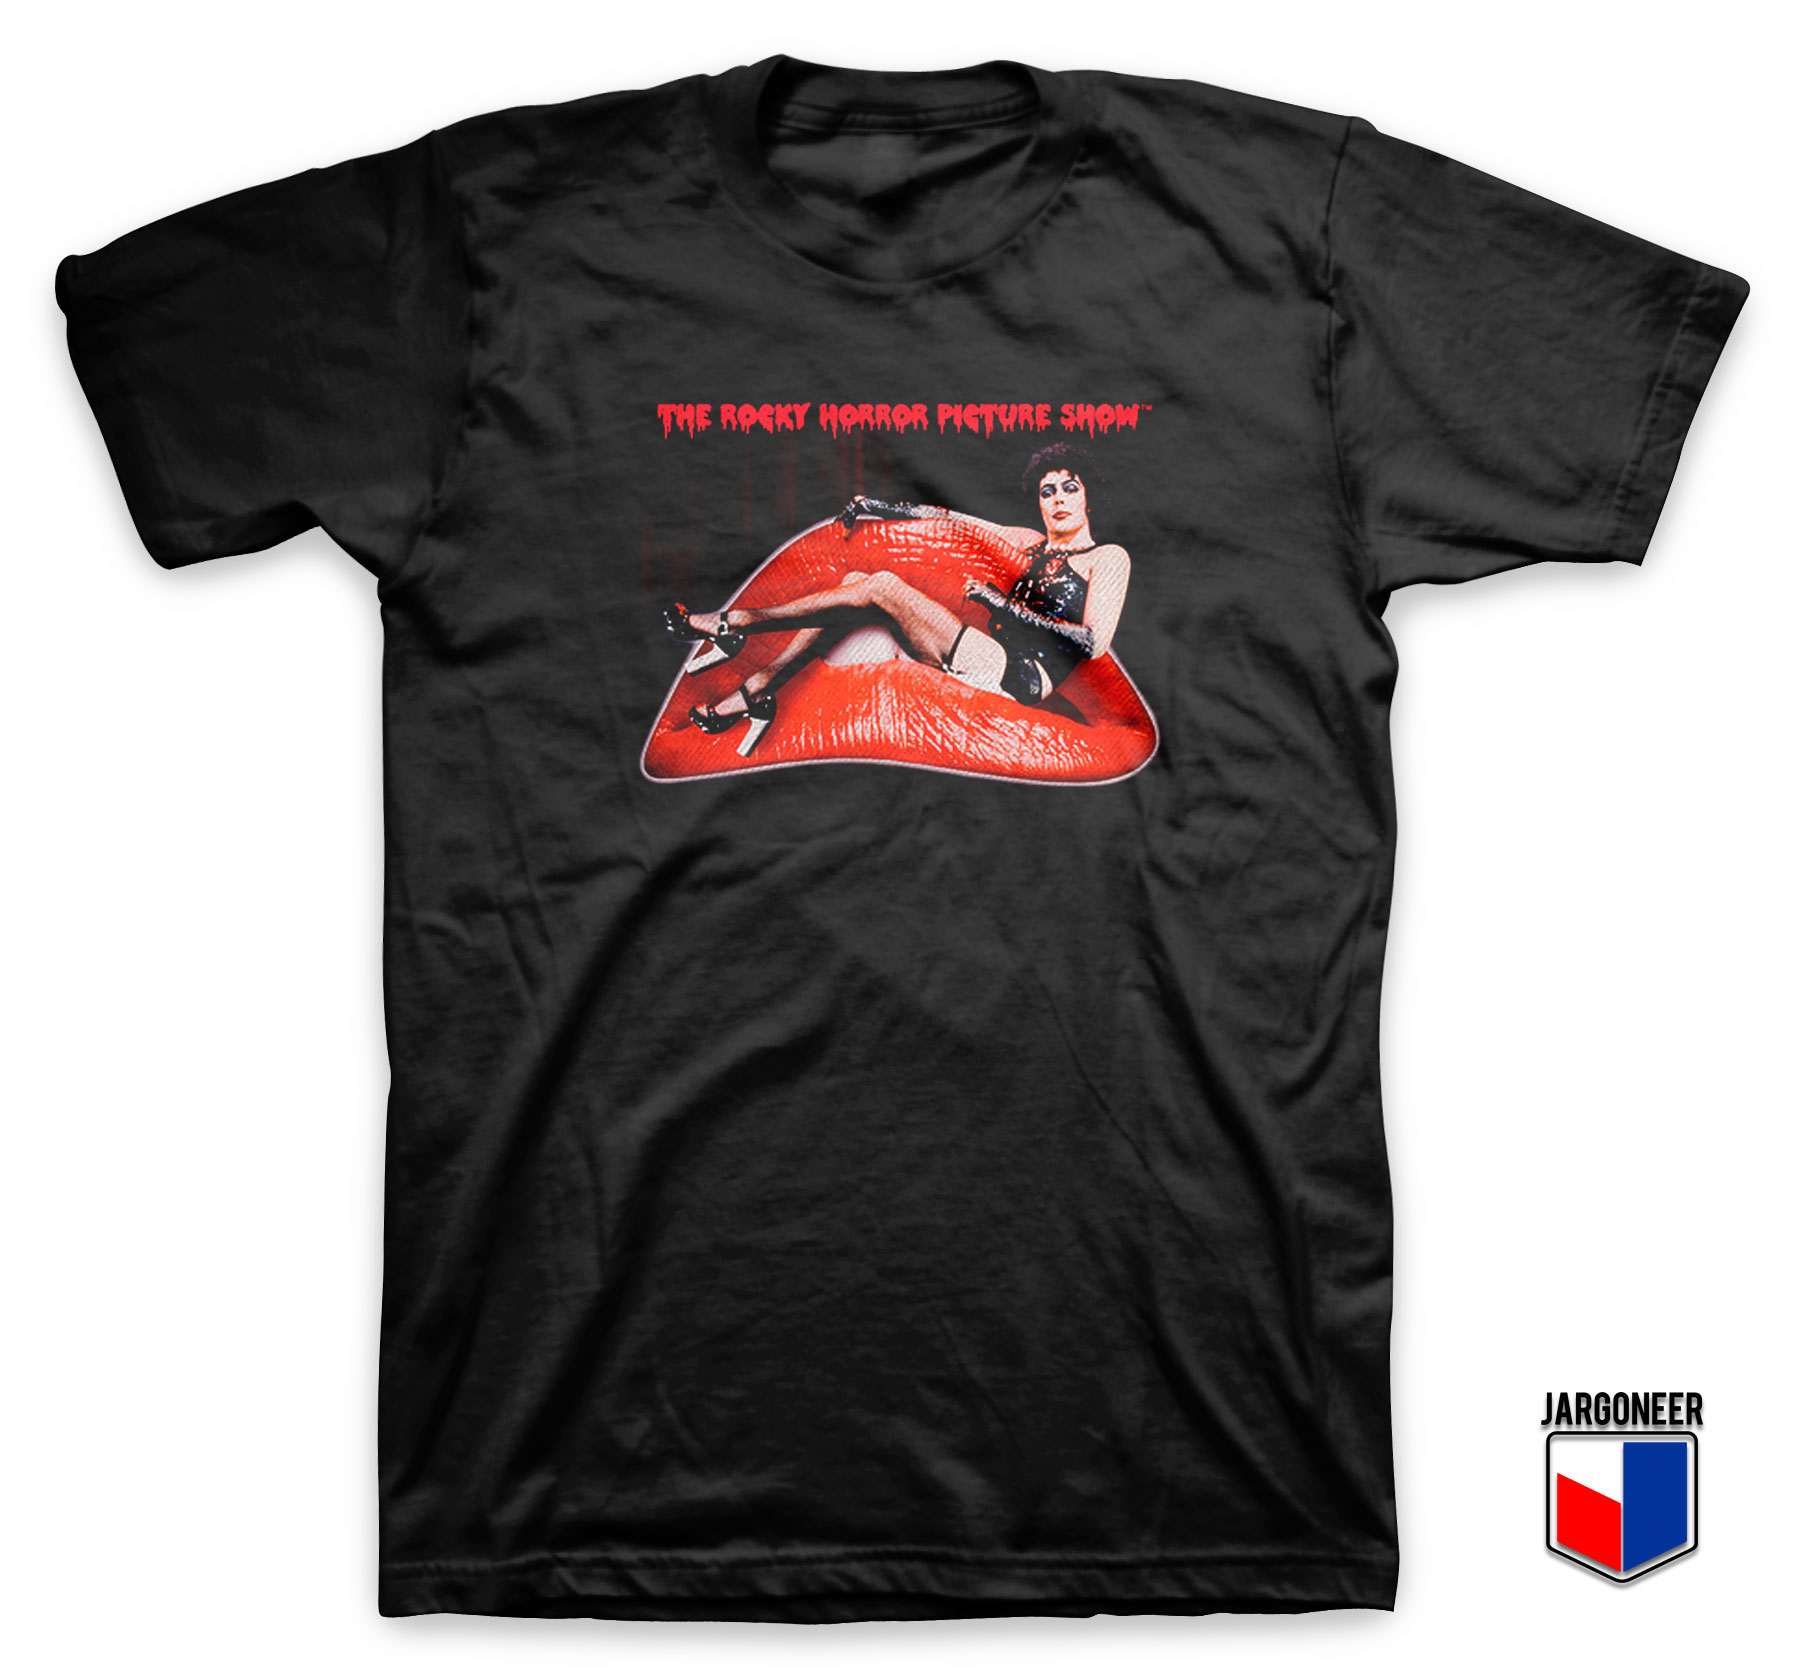 The Rocky Horror Show T Shirt - Shop Unique Graphic Cool Shirt Designs